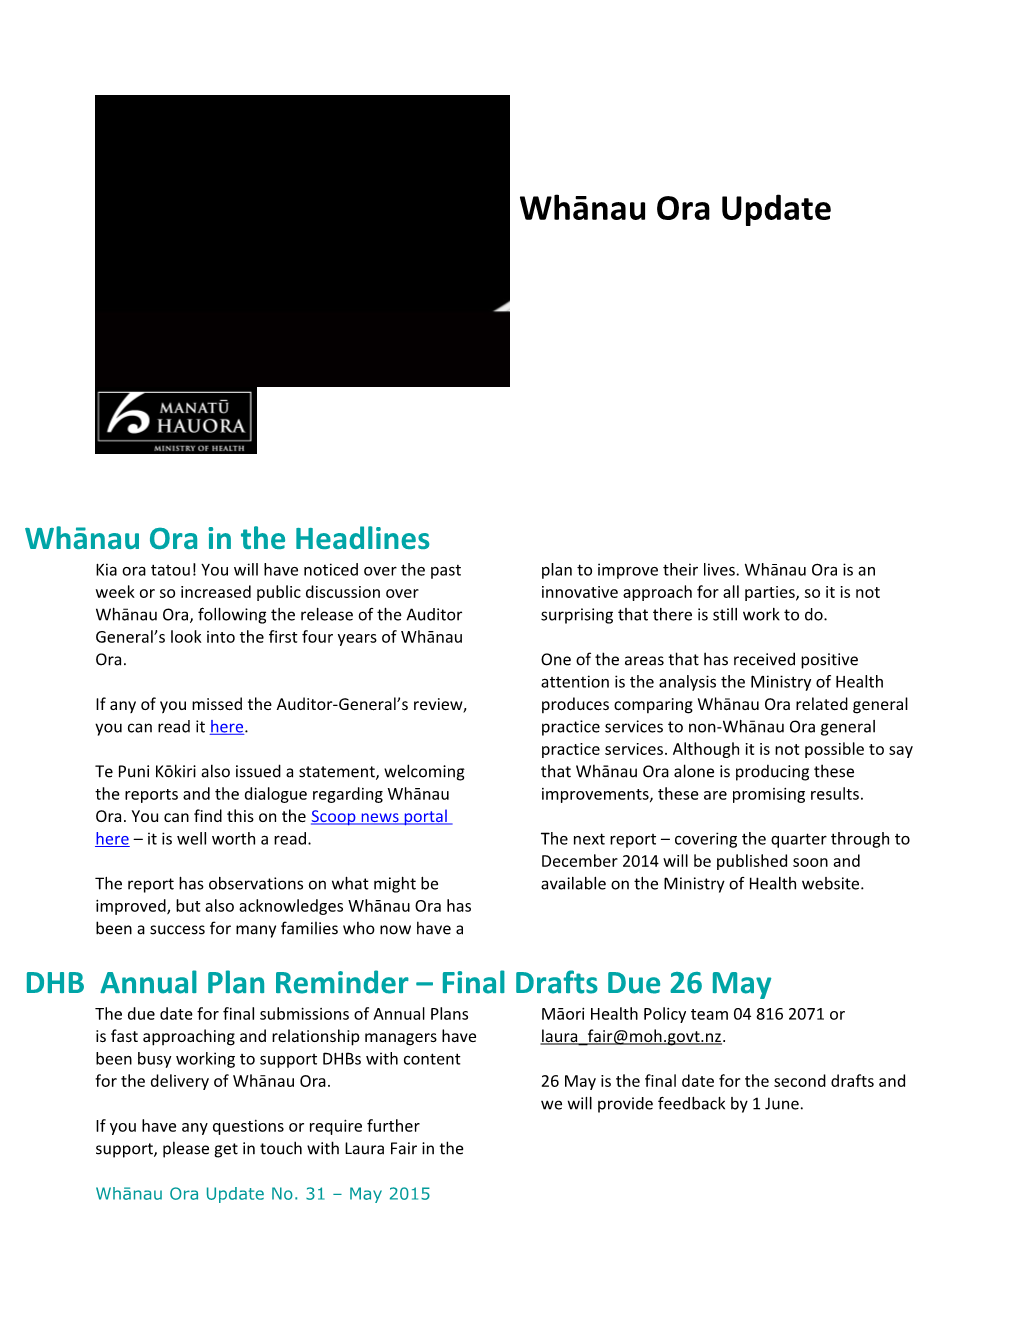 Whānau Ora Update for Dhbs - May 2015